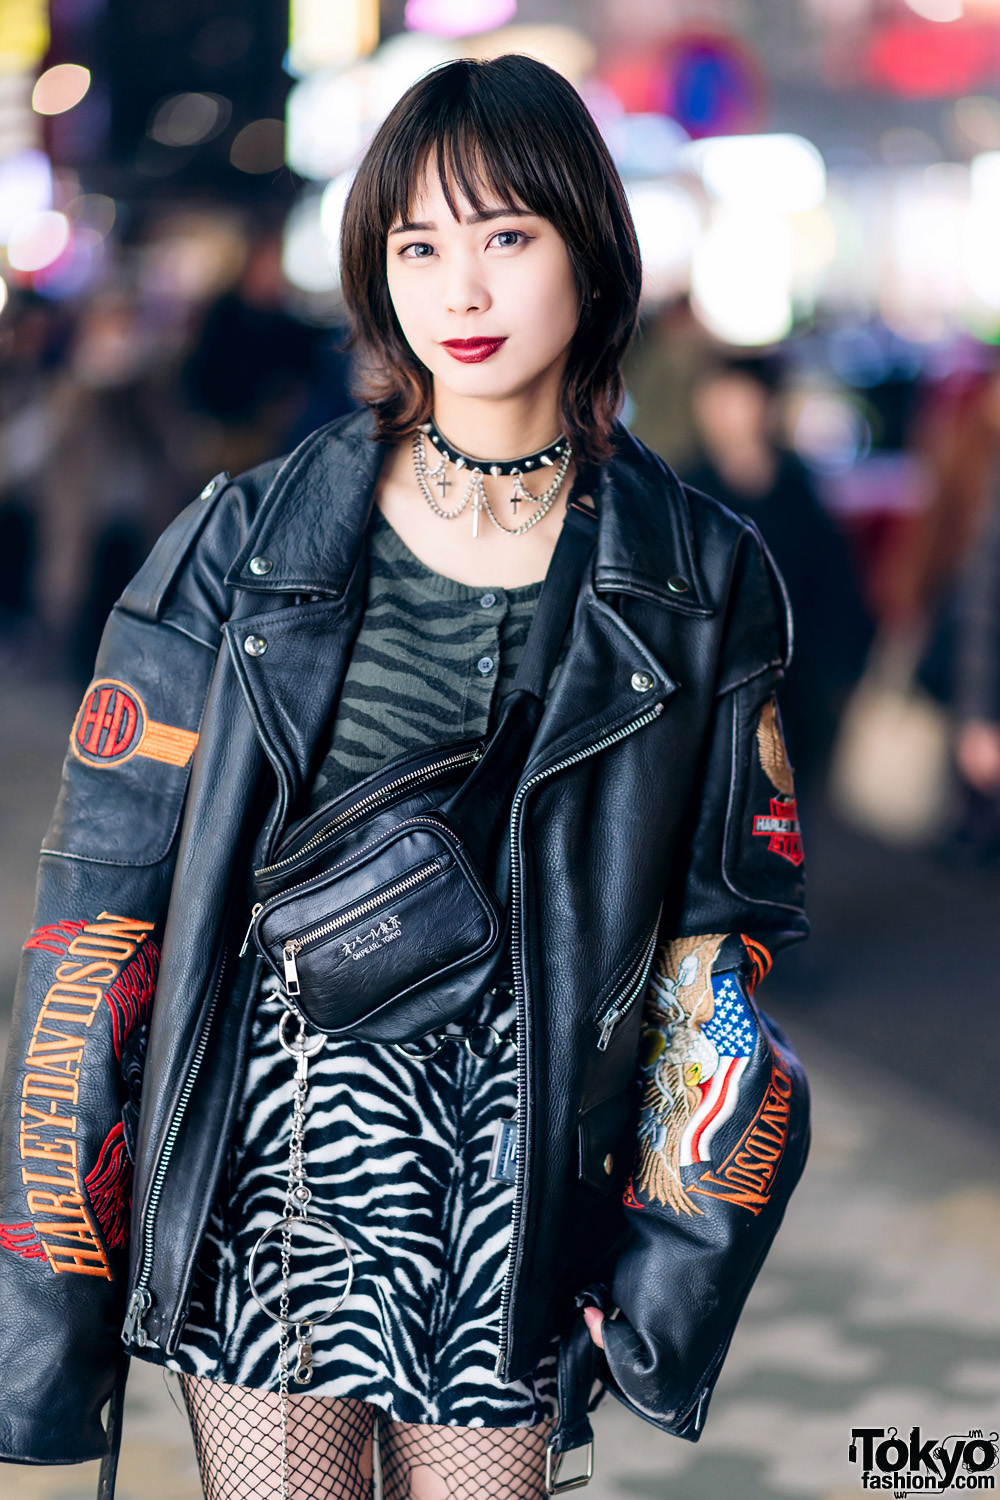 Harajuku Street Style w/ Harley Davidson Leather Jacket, Bubbles Zebra ...